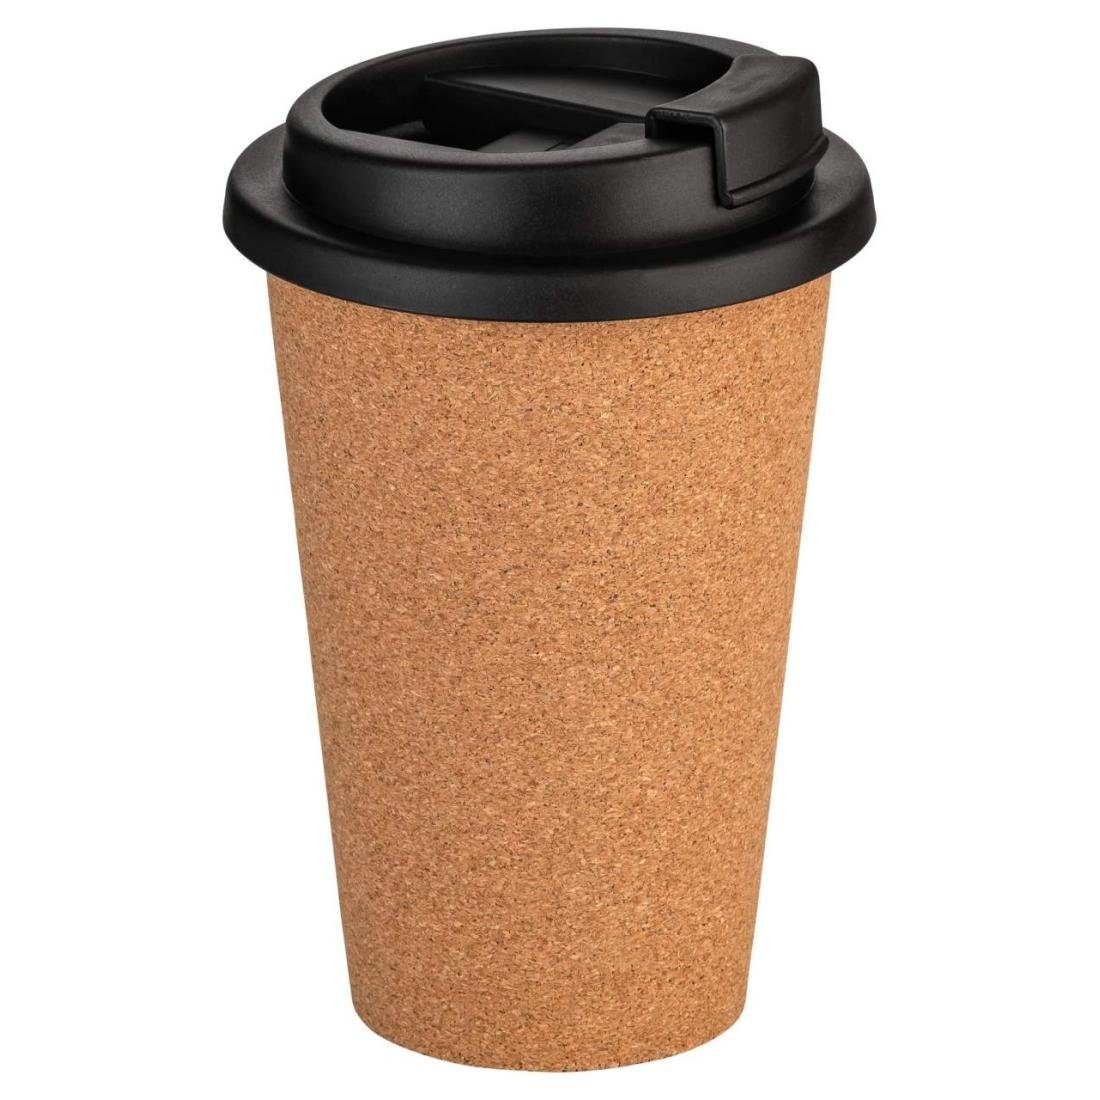 Finger Schützt Getränk das Kork-Deko.de Coffee-to-go-Becher - & Korkbeschichtung die warm mit hält